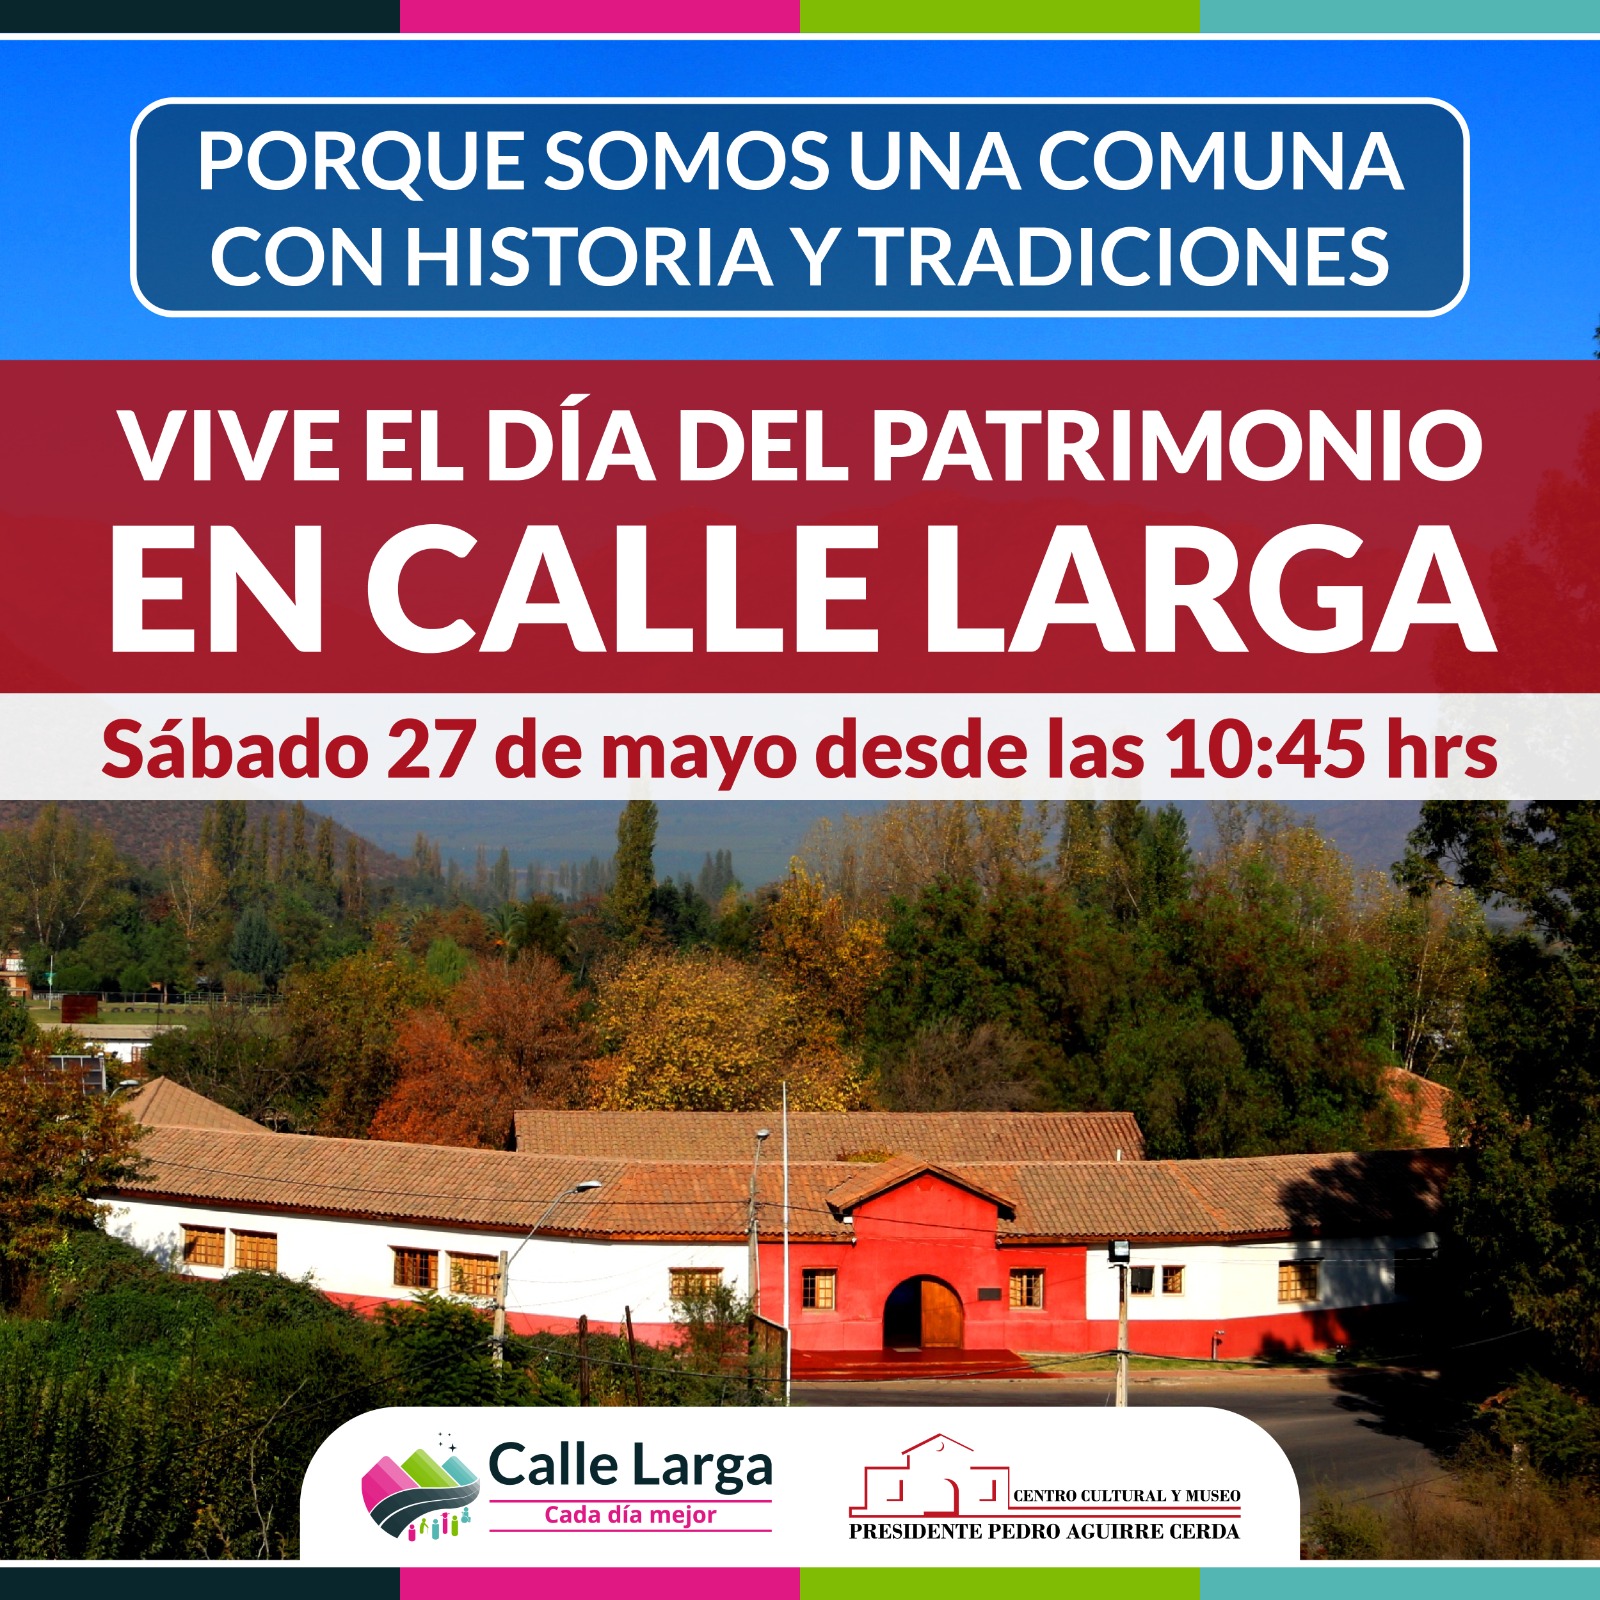 CALLE LARGA: Calle Larga celebrará el Día del Patrimonio con entretenidas actividades en el Centro Cultural Pedro Aguirre Cerda